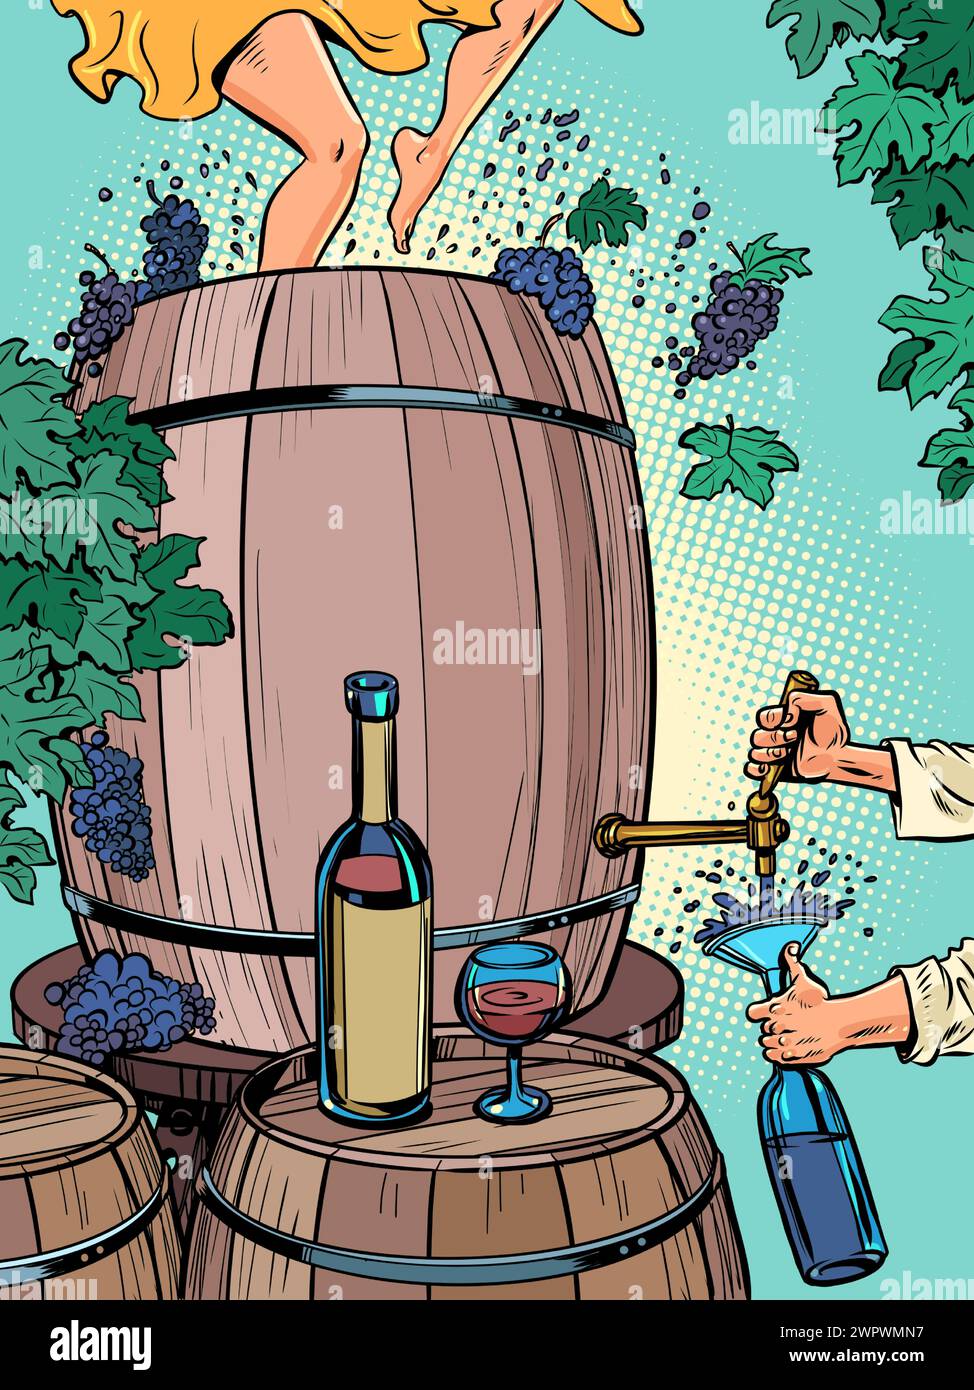 Il processo di creazione del vino e di berlo all'istante. Una grande botte d'uva, i piedi delle donne che le schiacciano, un uomo che versa una bevanda in una bottiglia. ALC Illustrazione Vettoriale